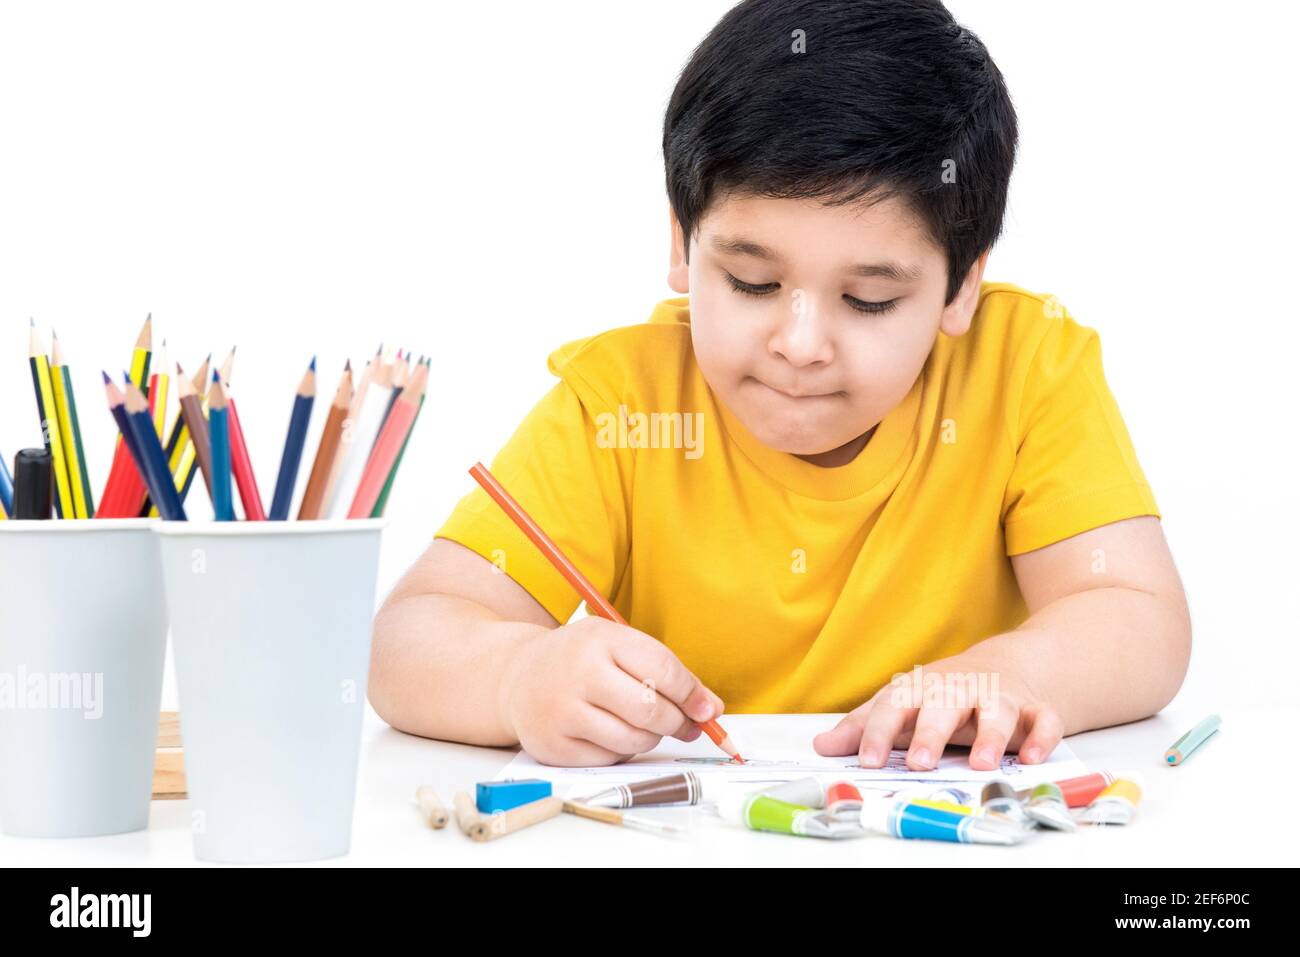 Jolie photo de peinture asiatique de garçon sur la table avec de la couleur crayon Banque D'Images